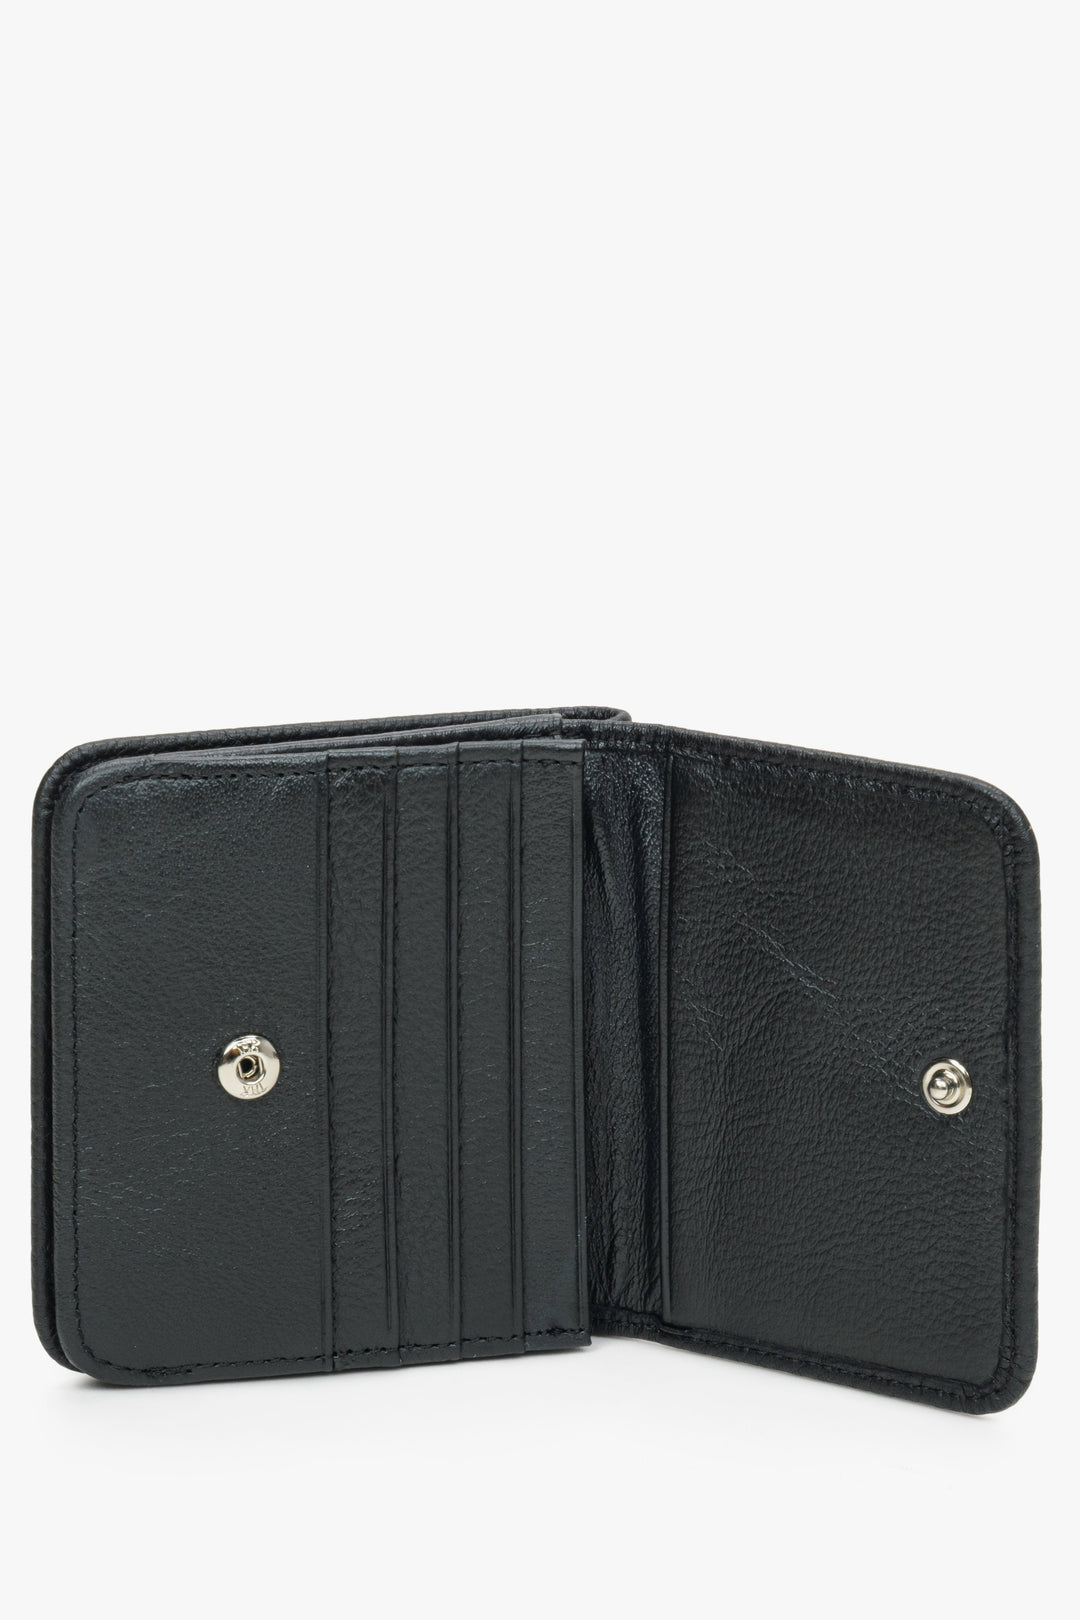 Kompaktowy portfel męski - portmonetka Estro w kolorze czarnym - prezentacja prezentacja wnętrza.